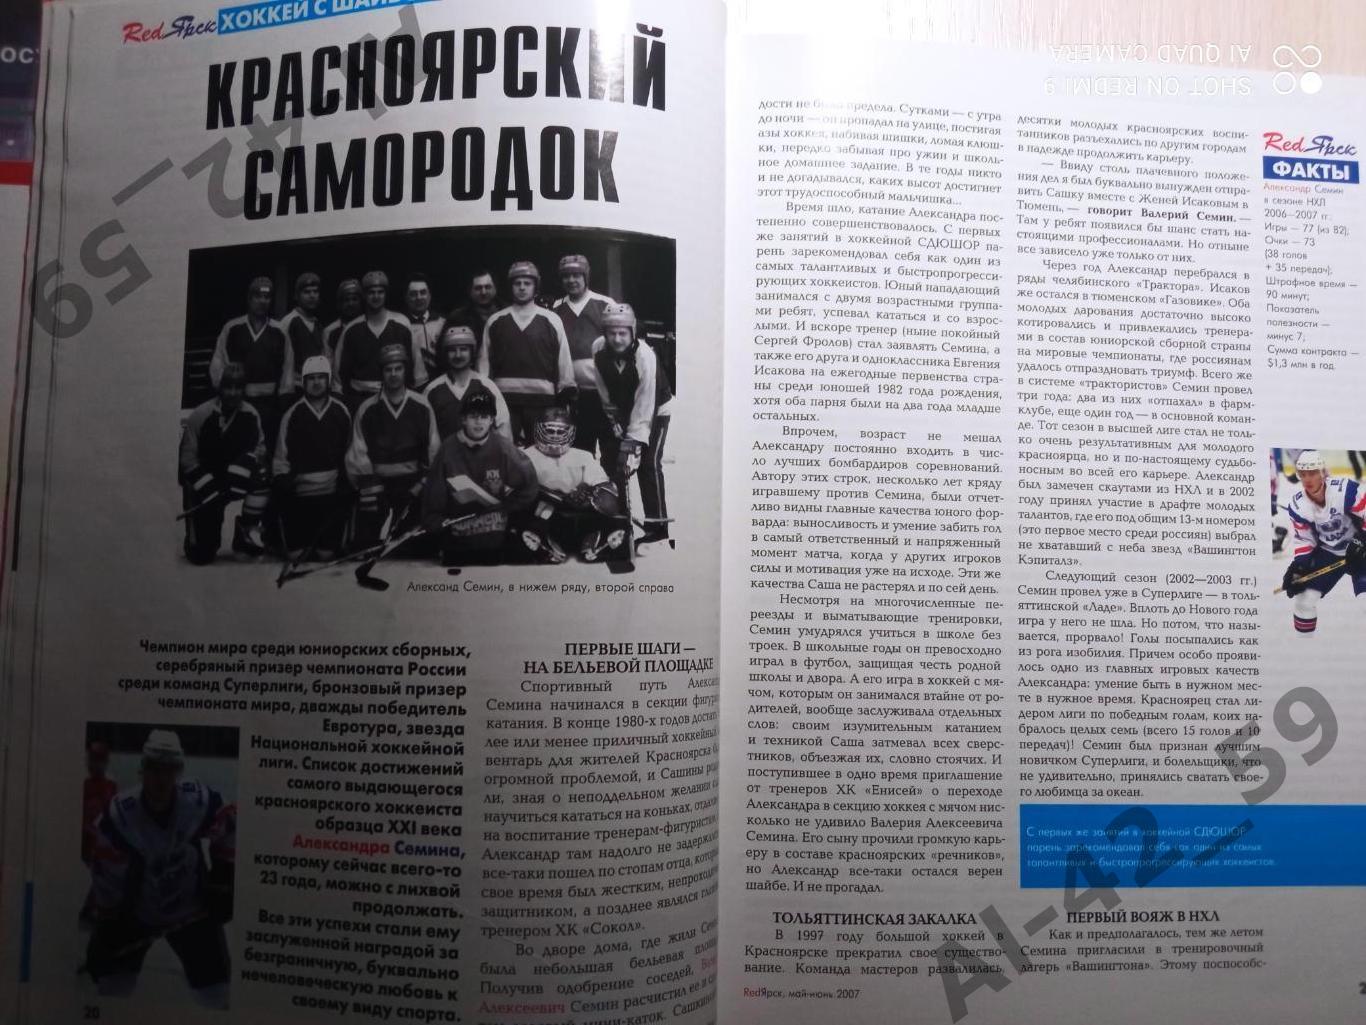 Журнал Redярск N4 (май-июнь 2007 ). 1